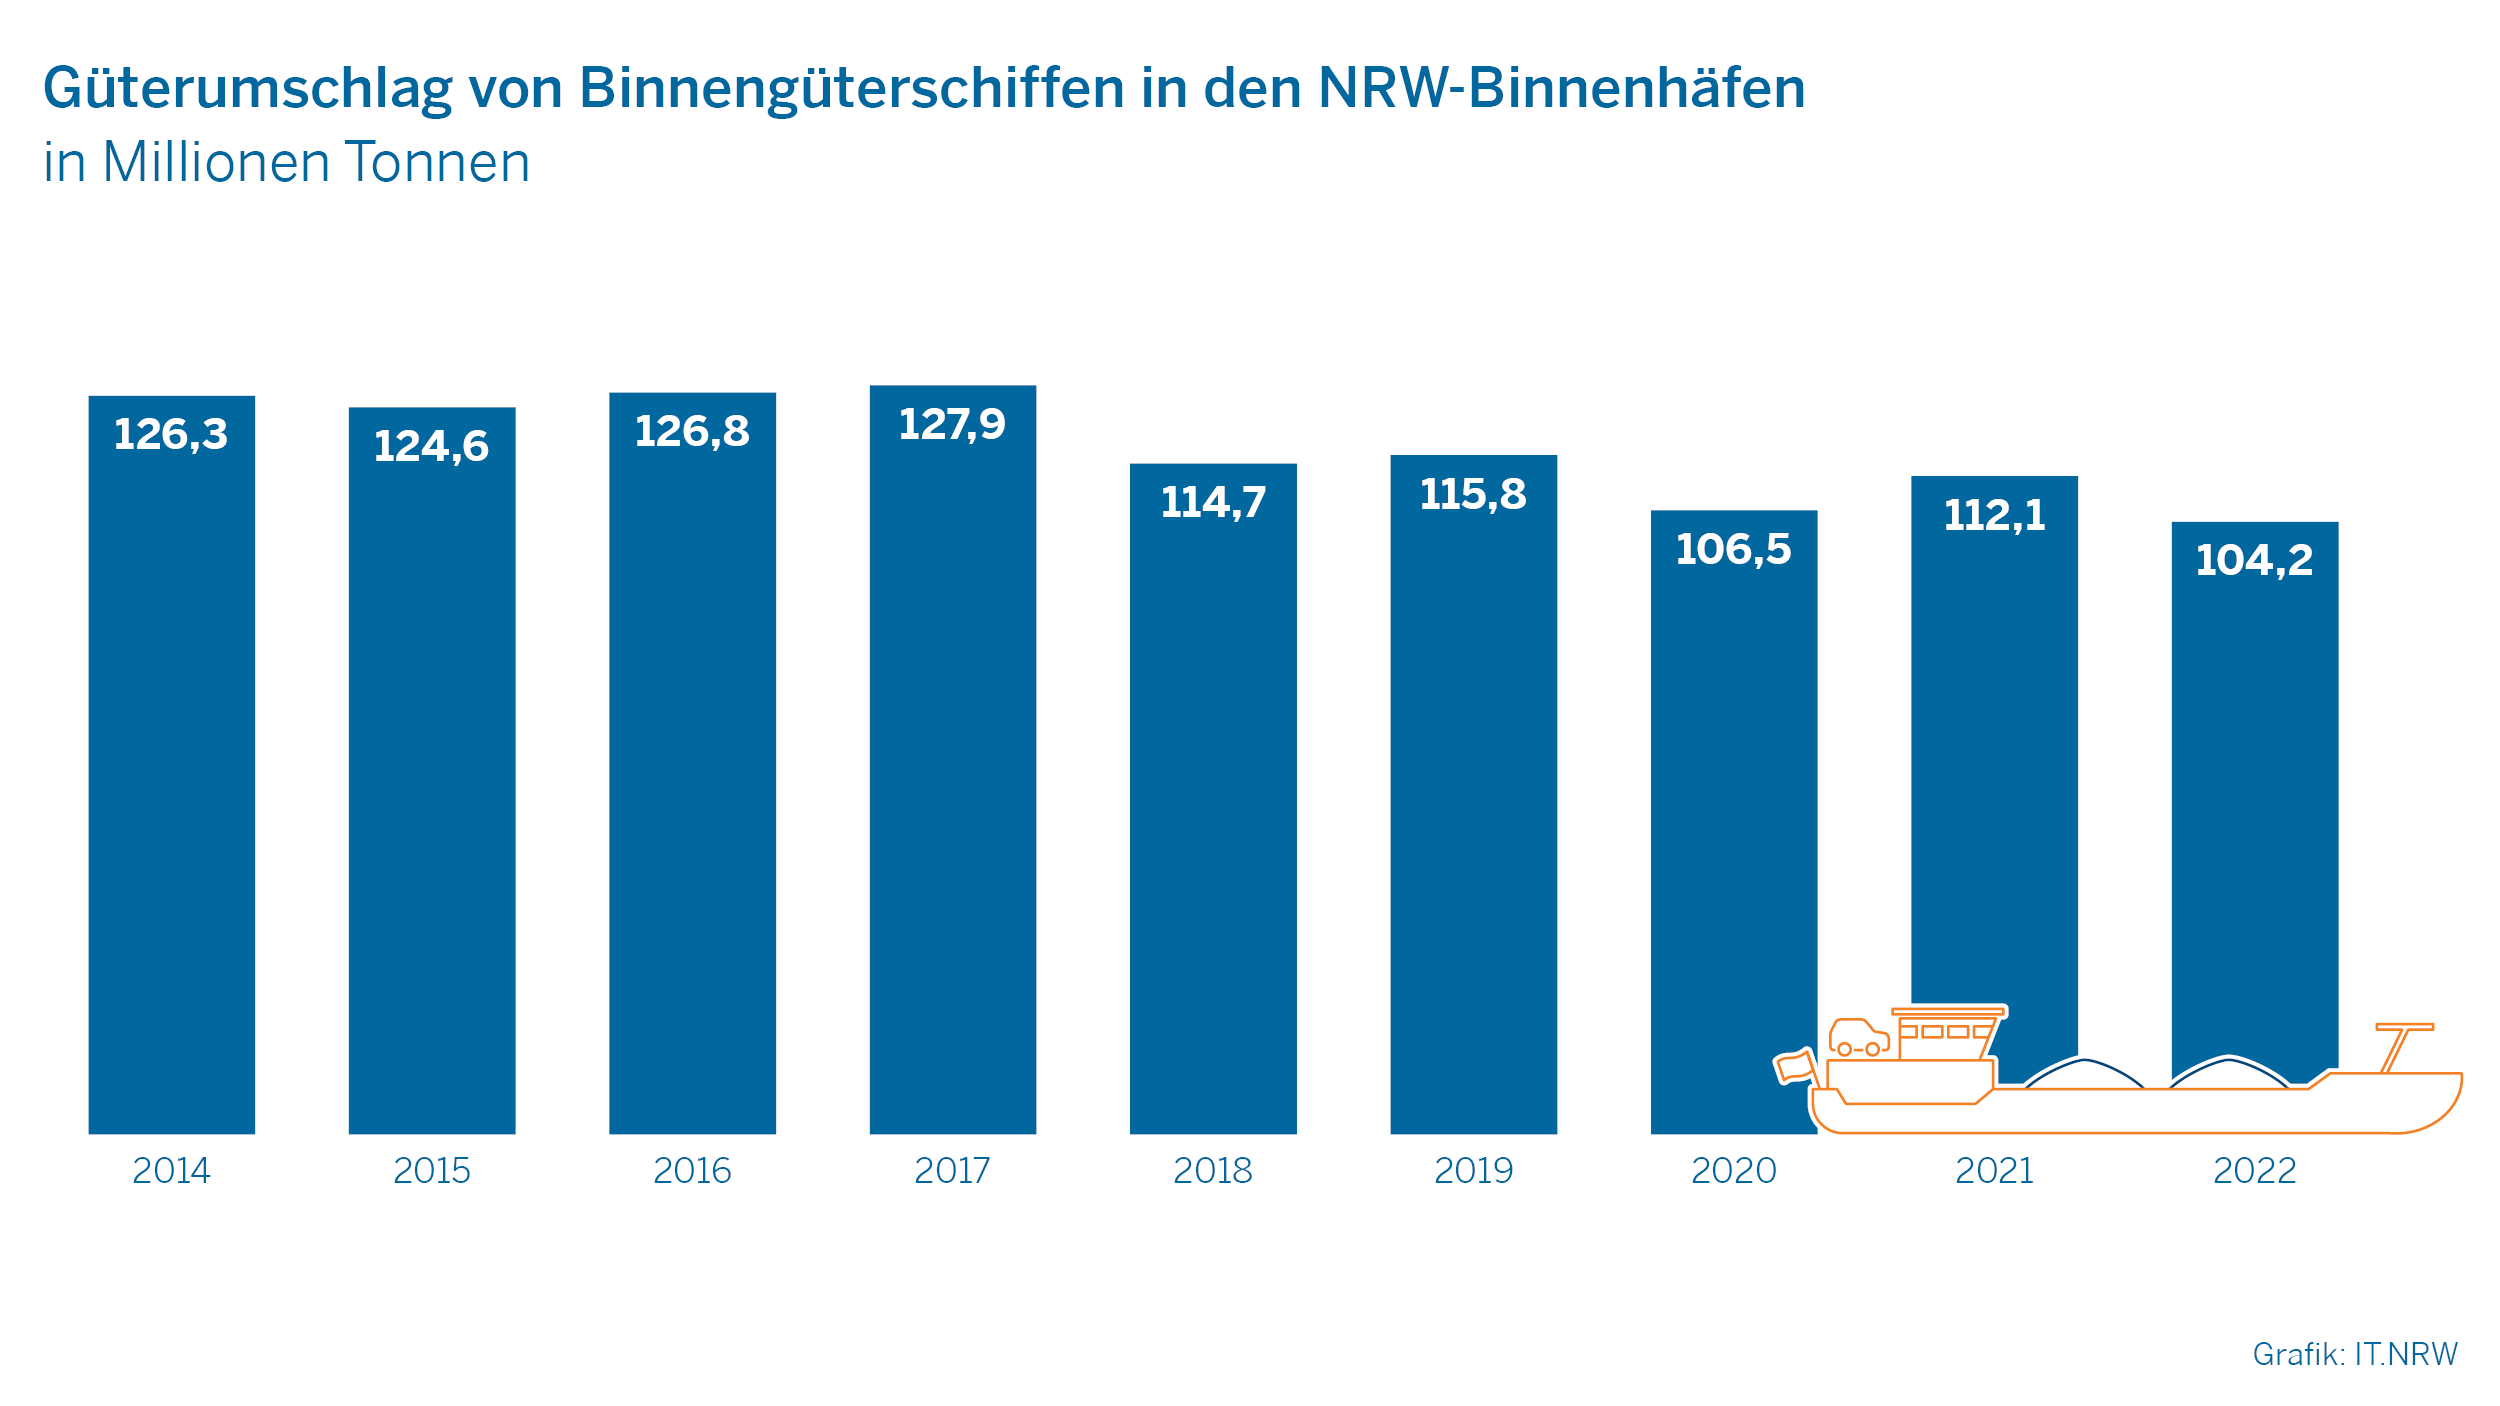 Güterumschlag von Binnengüterschiffen in den NRW-Binnenhäfen